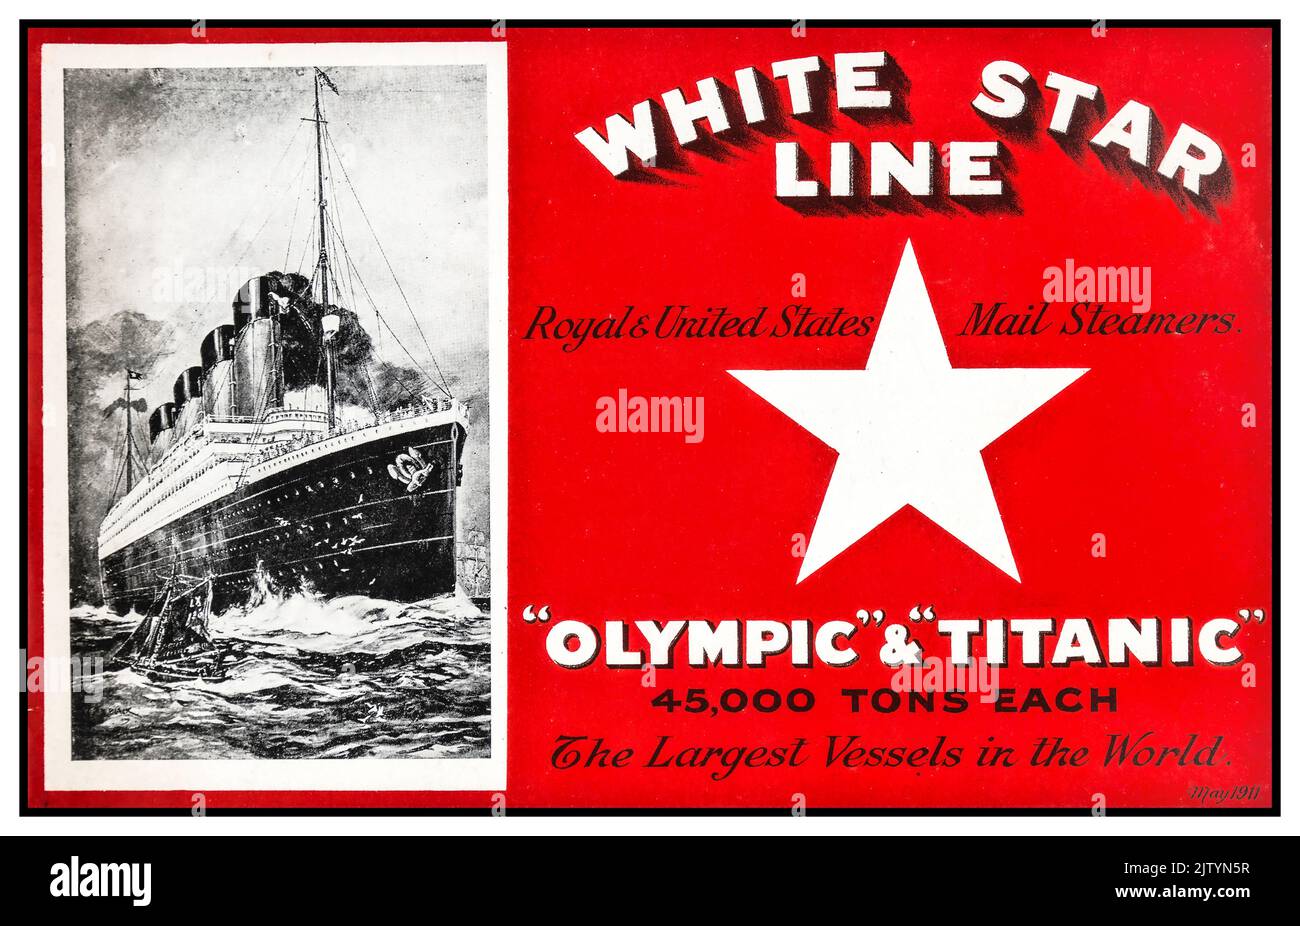 RMS Titanic e RMS Olympic 45000 tonnellate ciascuna promozione White Star Line Poster maggio 1911. Le navi più grandi del mondo. Royal e Stati Uniti Mail Steamers. OLYMPIC - TITANIC] Una brochure White Star Line The Liverpool Printing & Stationary Co. Ltd., maggio 1911 Foto Stock